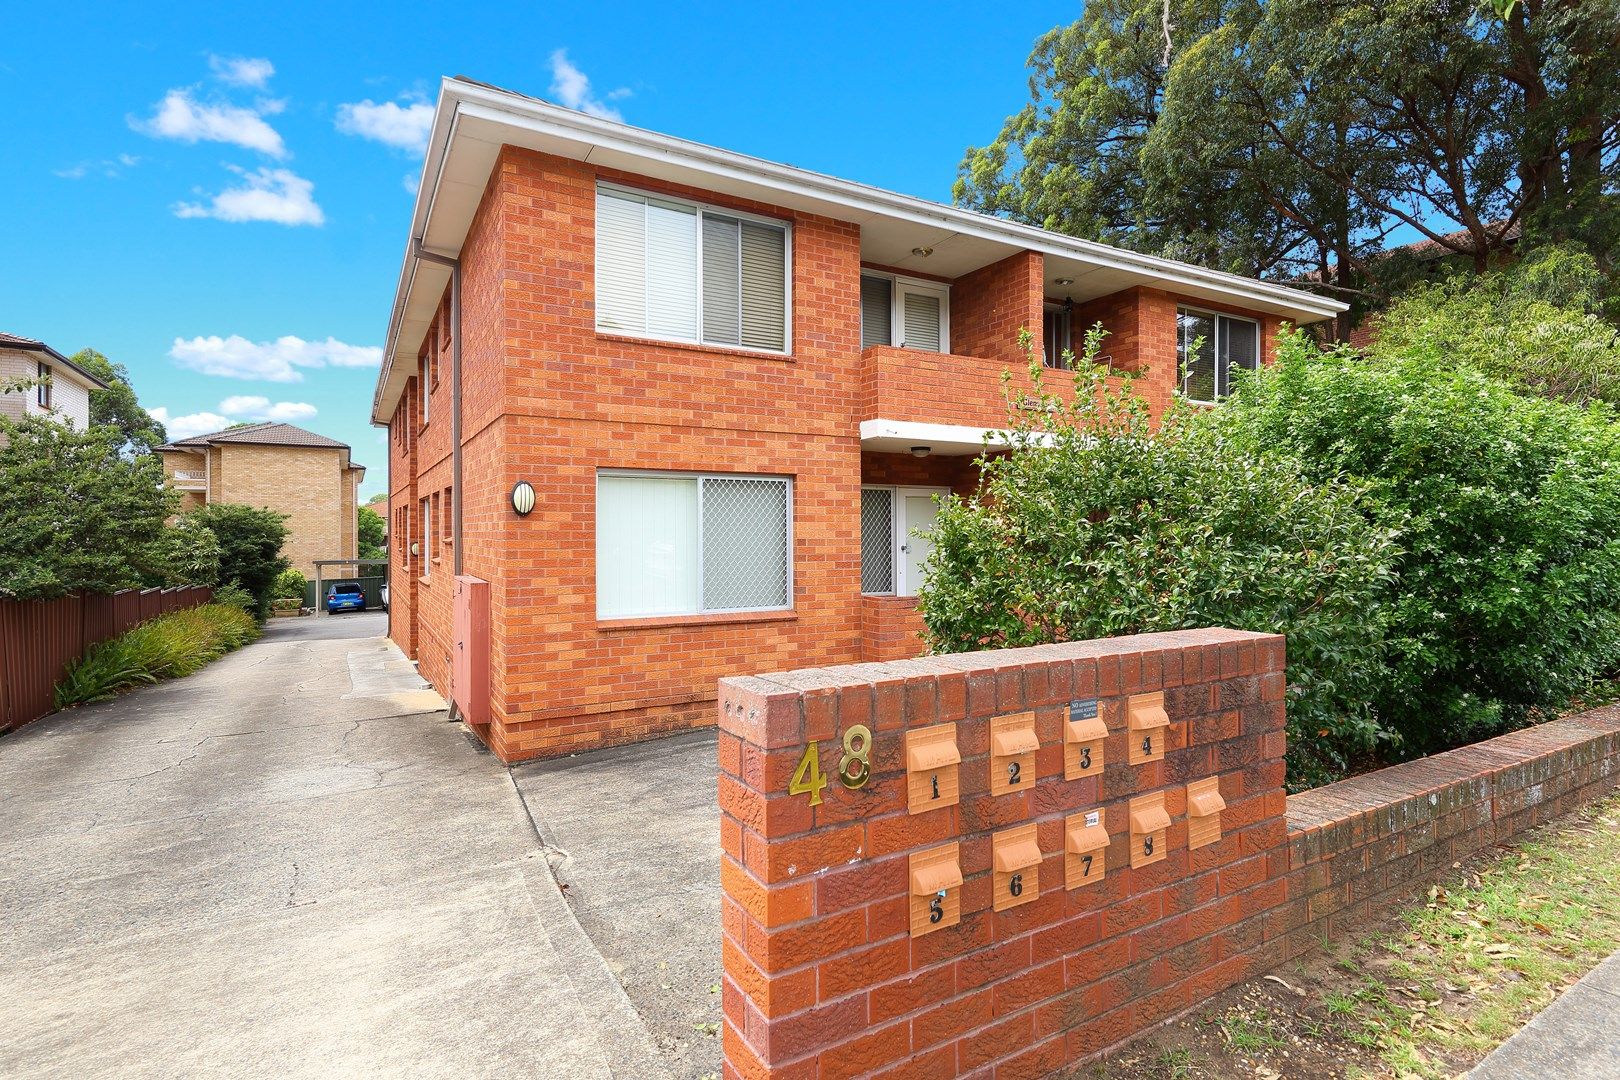 2 bedrooms Apartment / Unit / Flat in 3/48 Ocean Street PENSHURST NSW, 2222